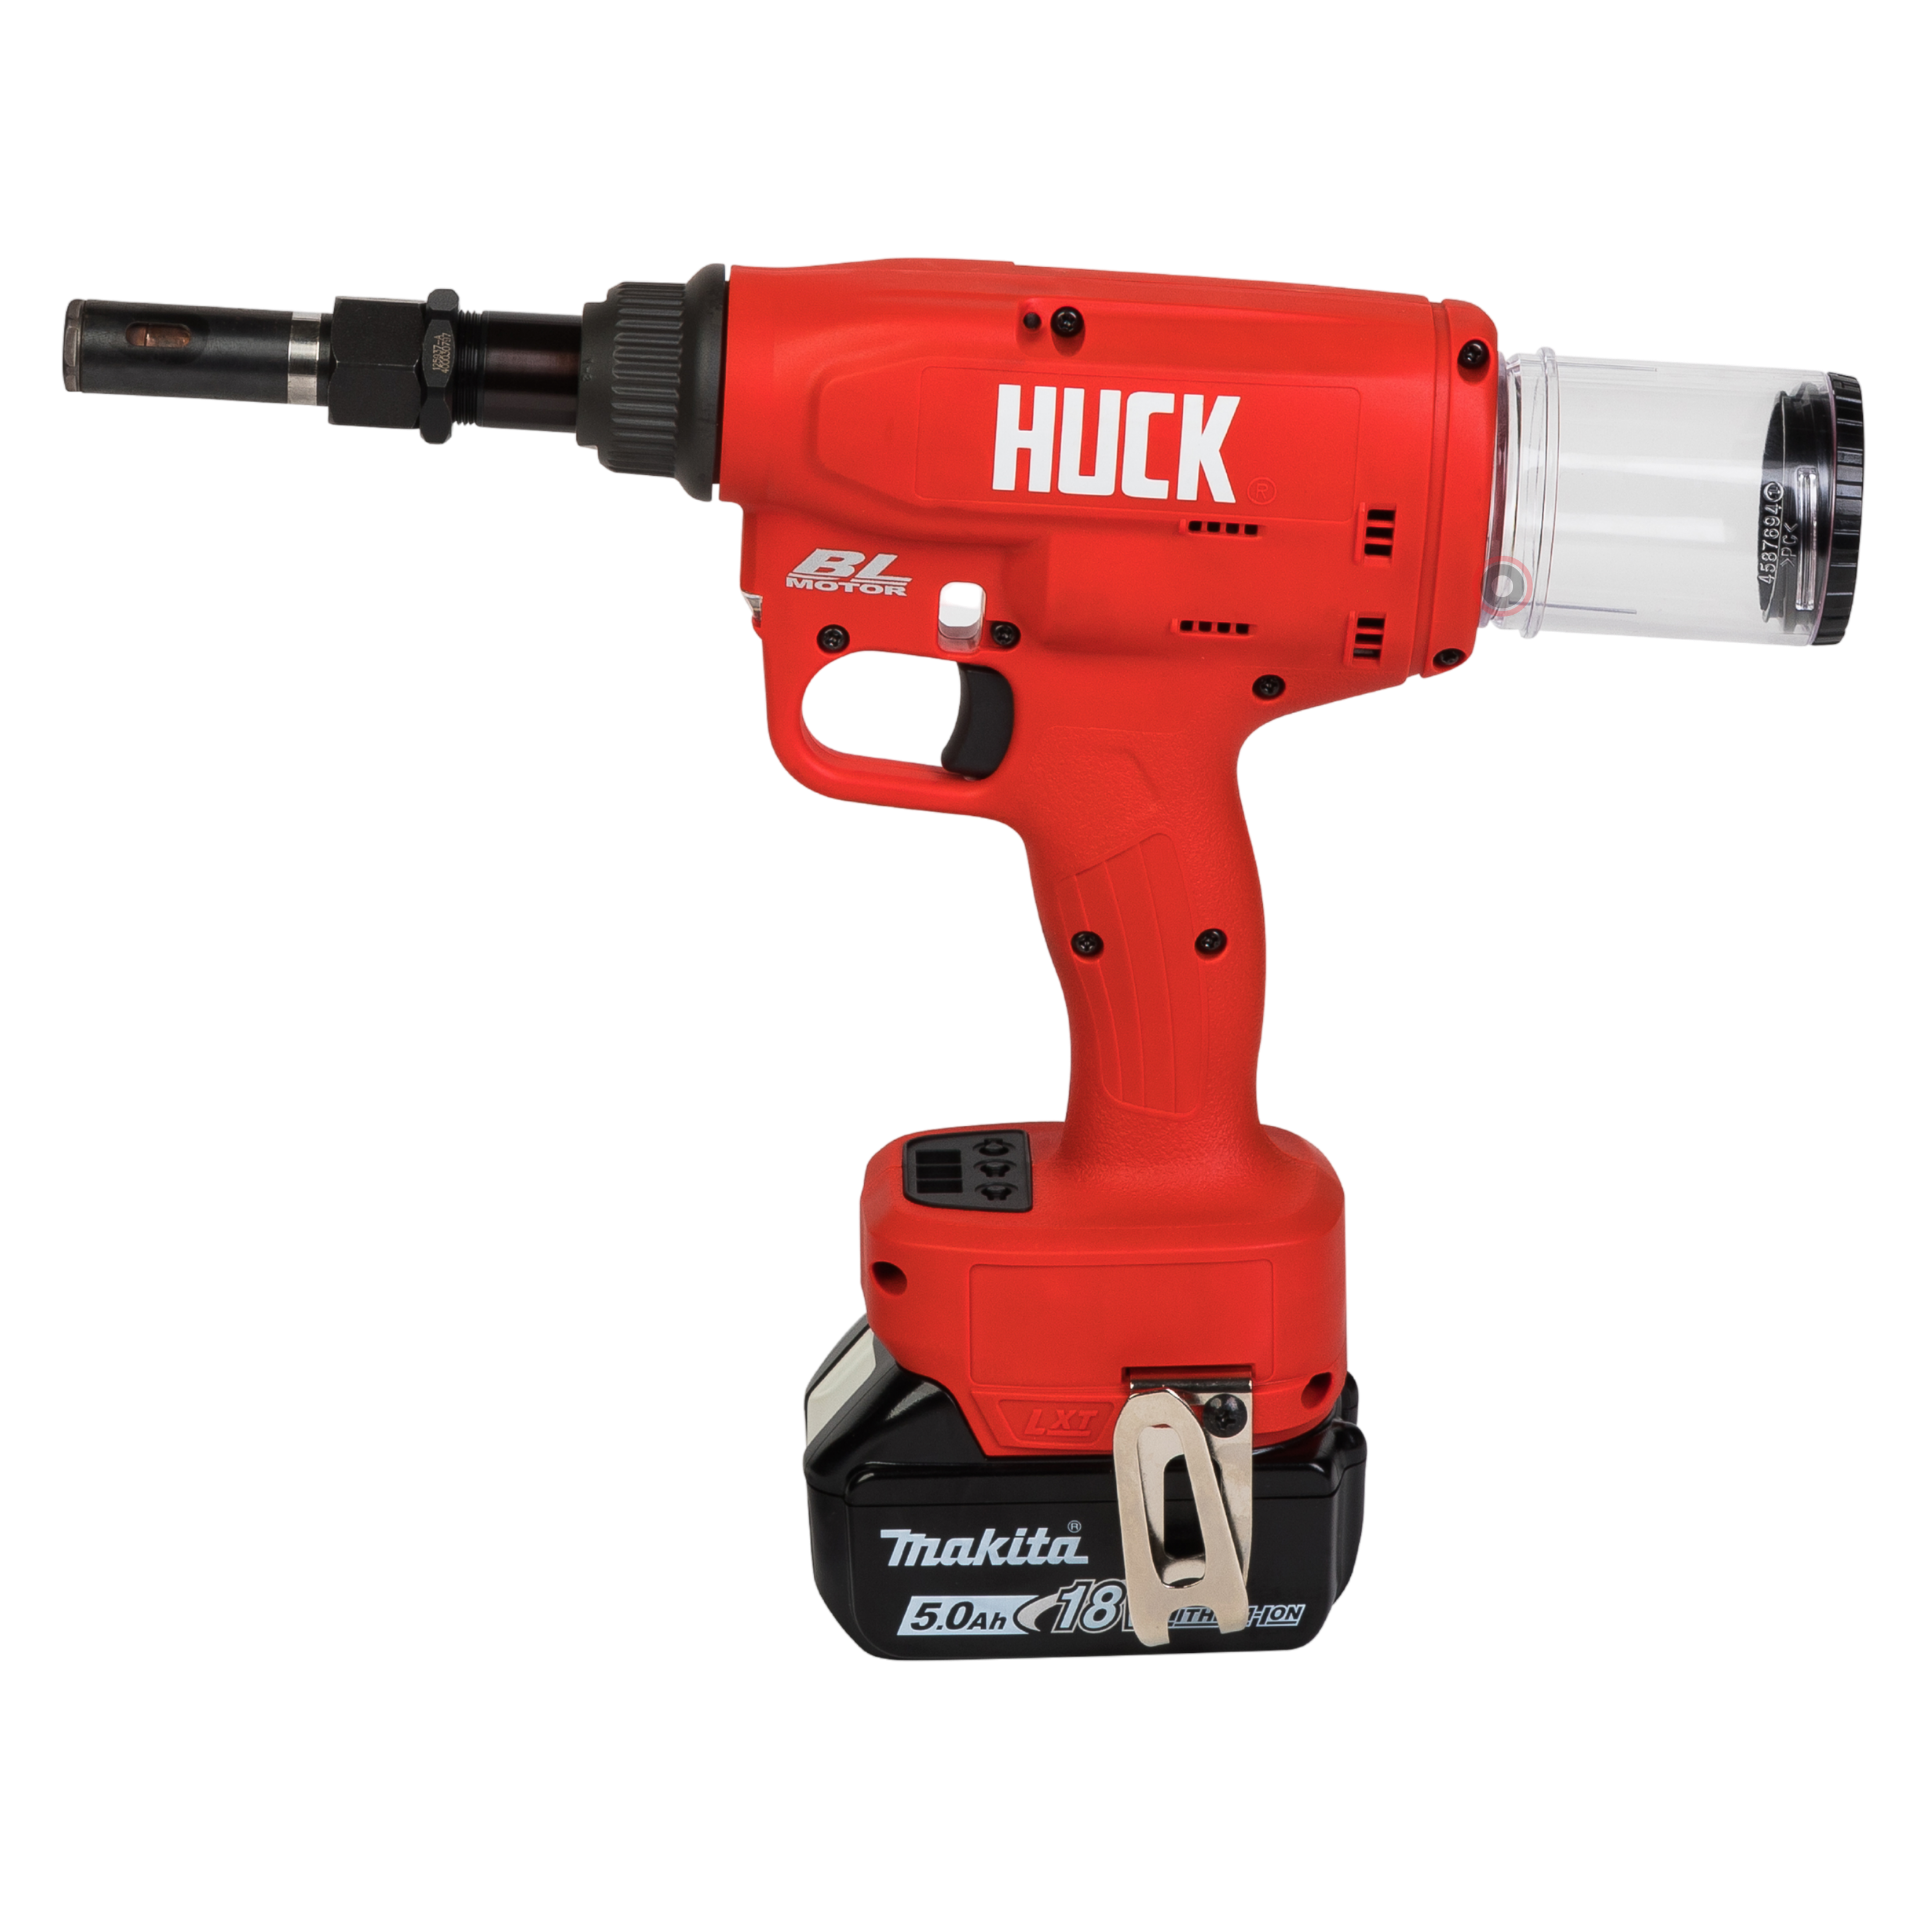 Huck® Bolt Tools - Fasteners, Rivets, Guns